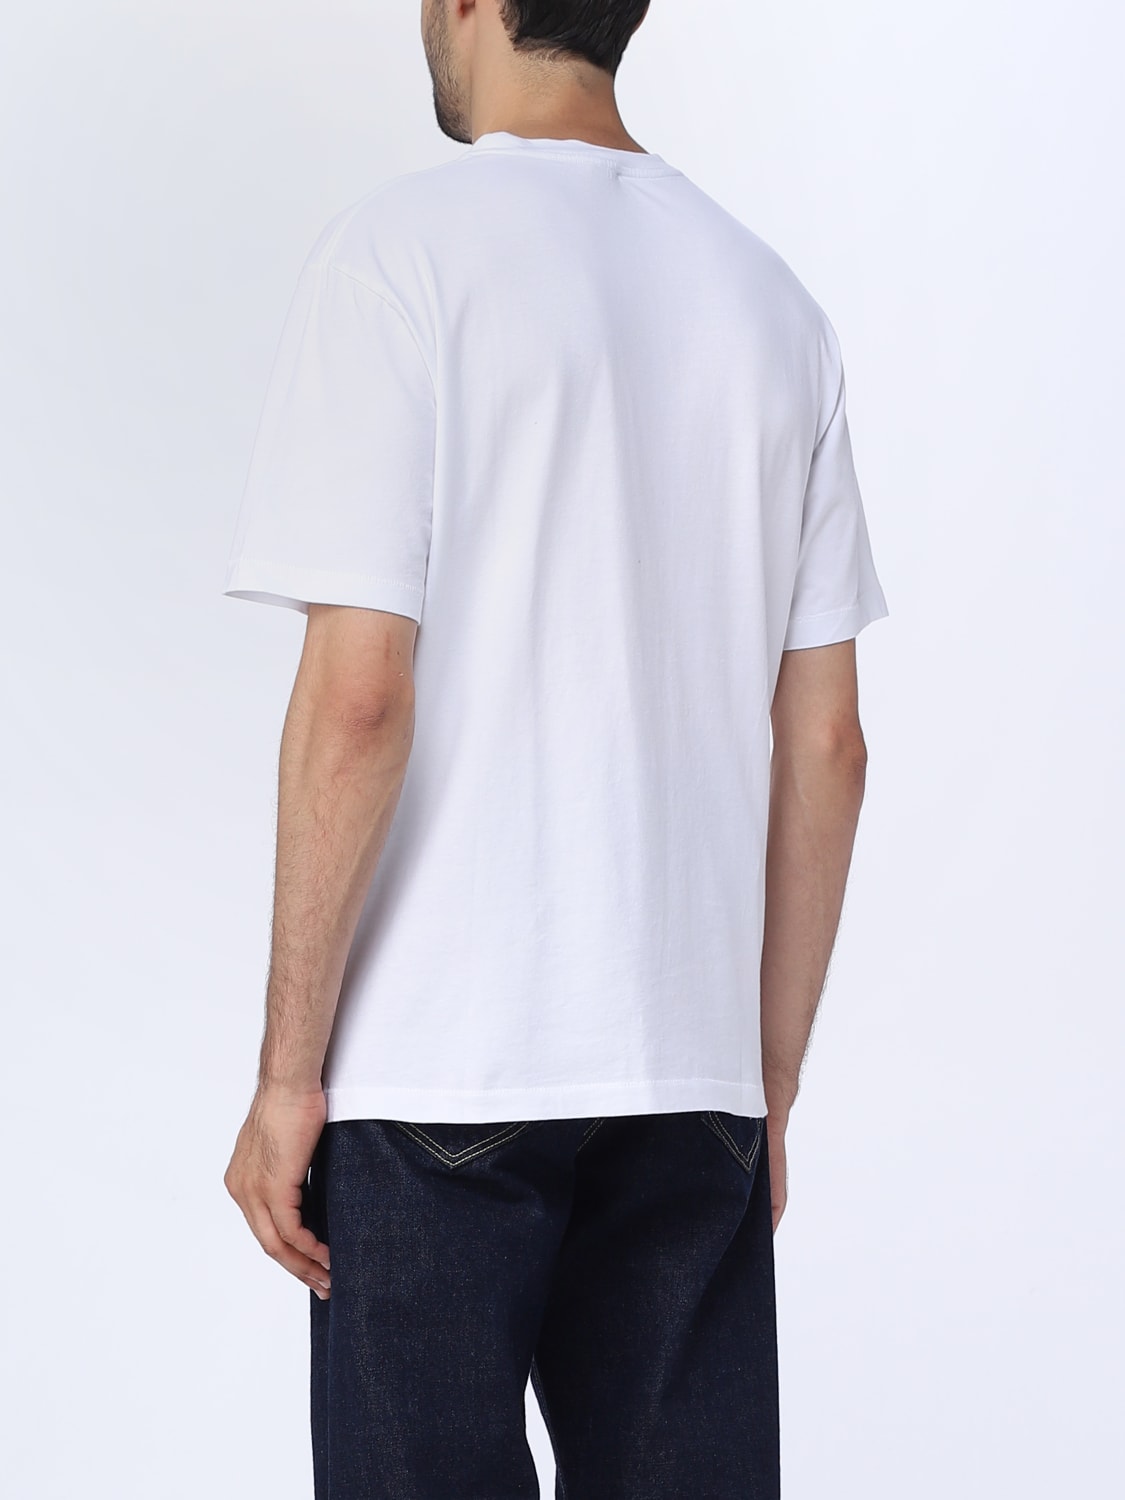 KENZO: Flower cotton t-shirt - White | Kenzo t-shirt FC65TS4124SG ...